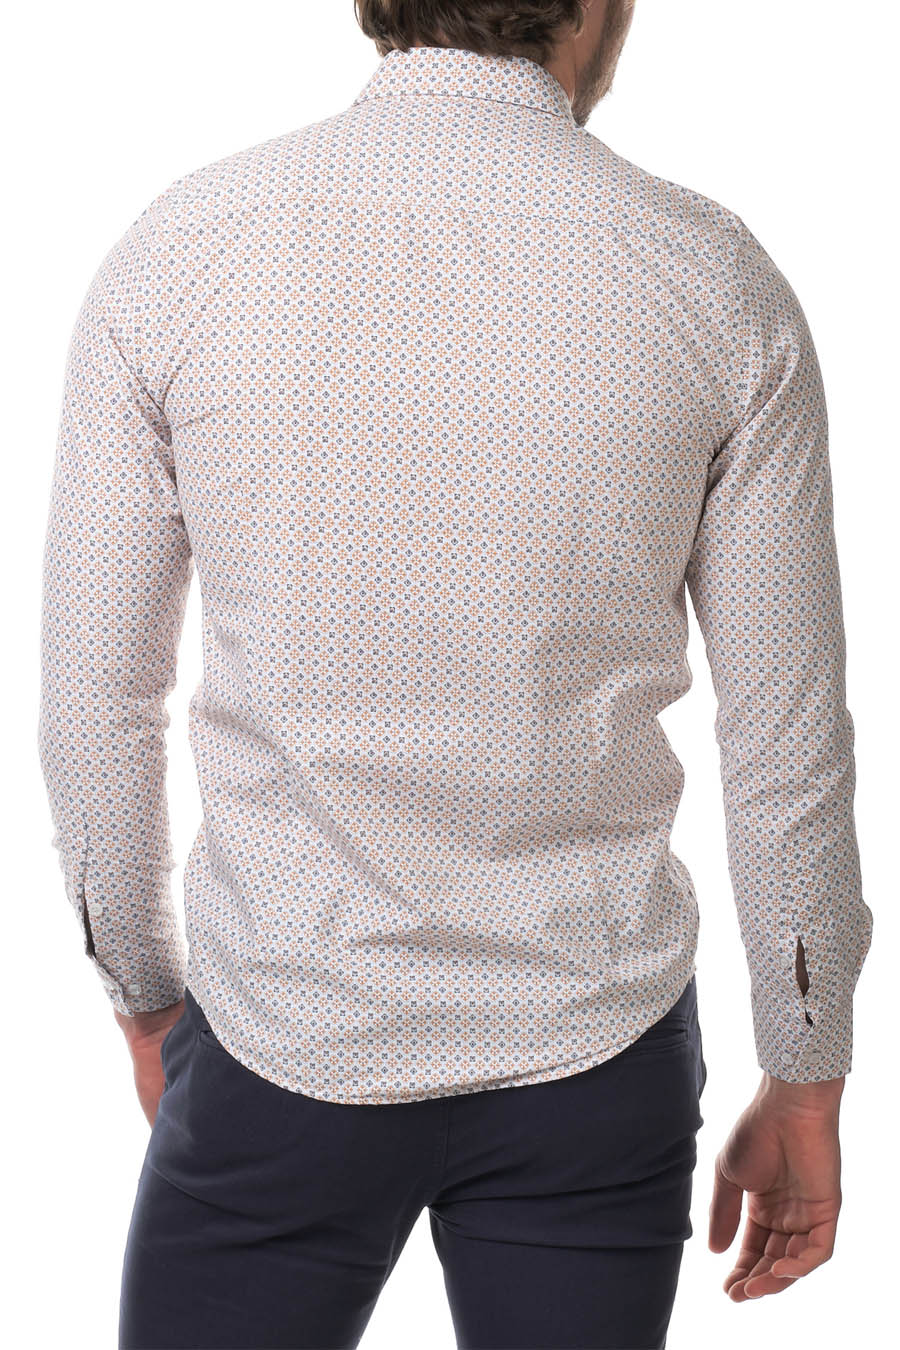 Ανδρικό πουκάμισο Arturo, Λευκό/Πορτοκάλι 4